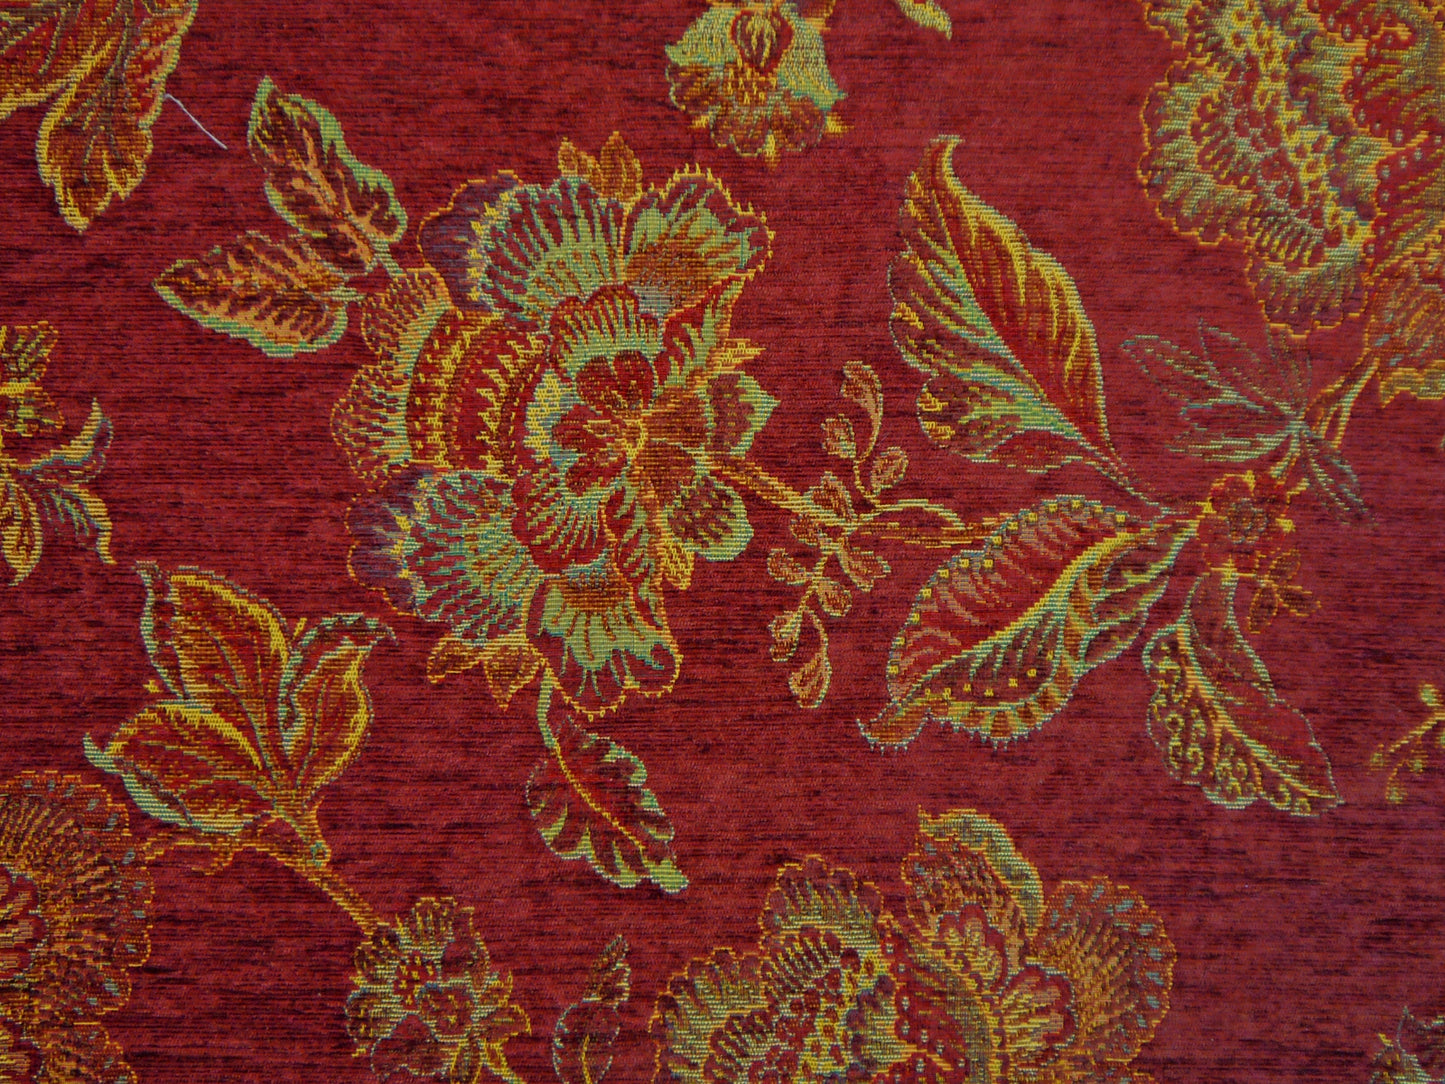 Imperiale Fabric Samples - Rydan Interiors